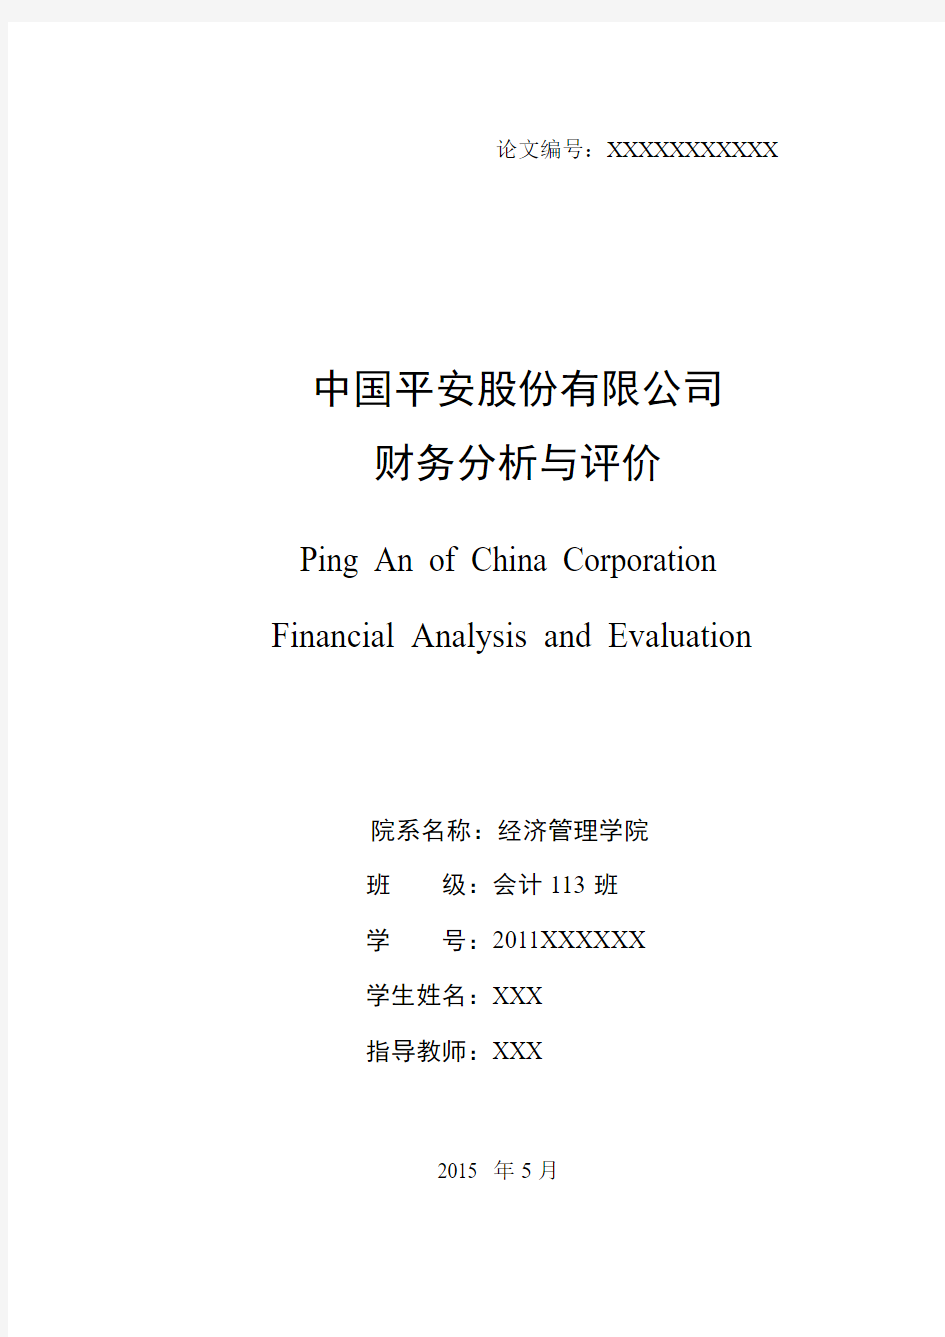 中国平安股份有限公司财务分析与评价毕业设计论文